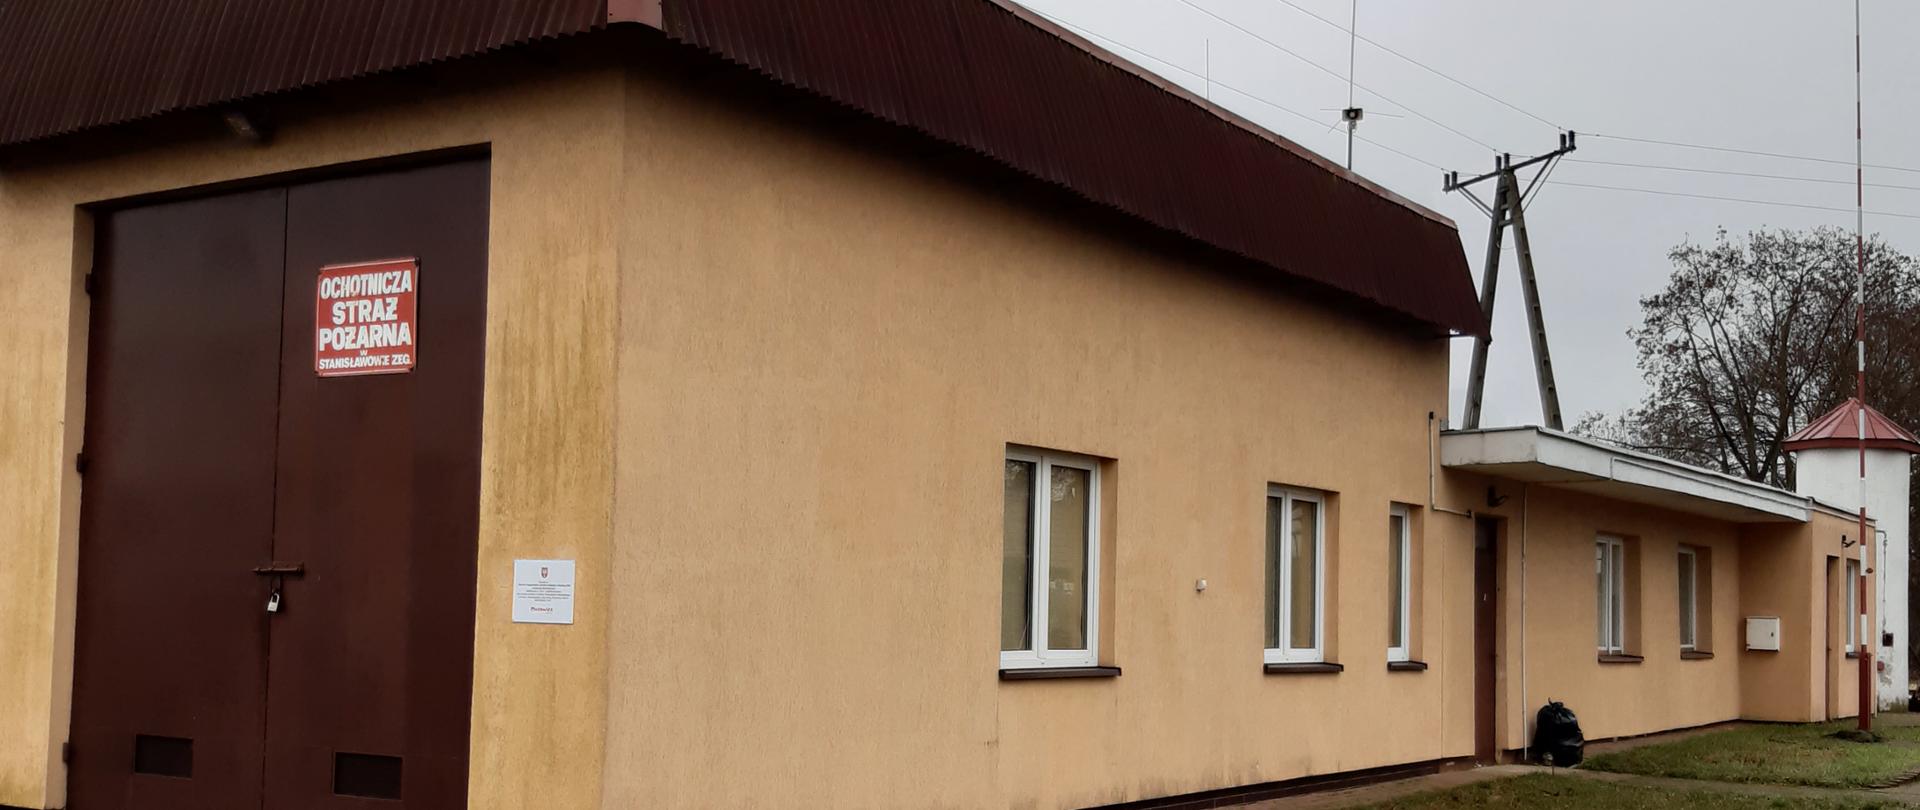 Strażnica OSP Stanisławowo Zegrzyńskie. Na zdjęciu budynek murowany kryty blachą parterowy. Dach i brama garażowa brązowa z prawej strony maszt flagowy.